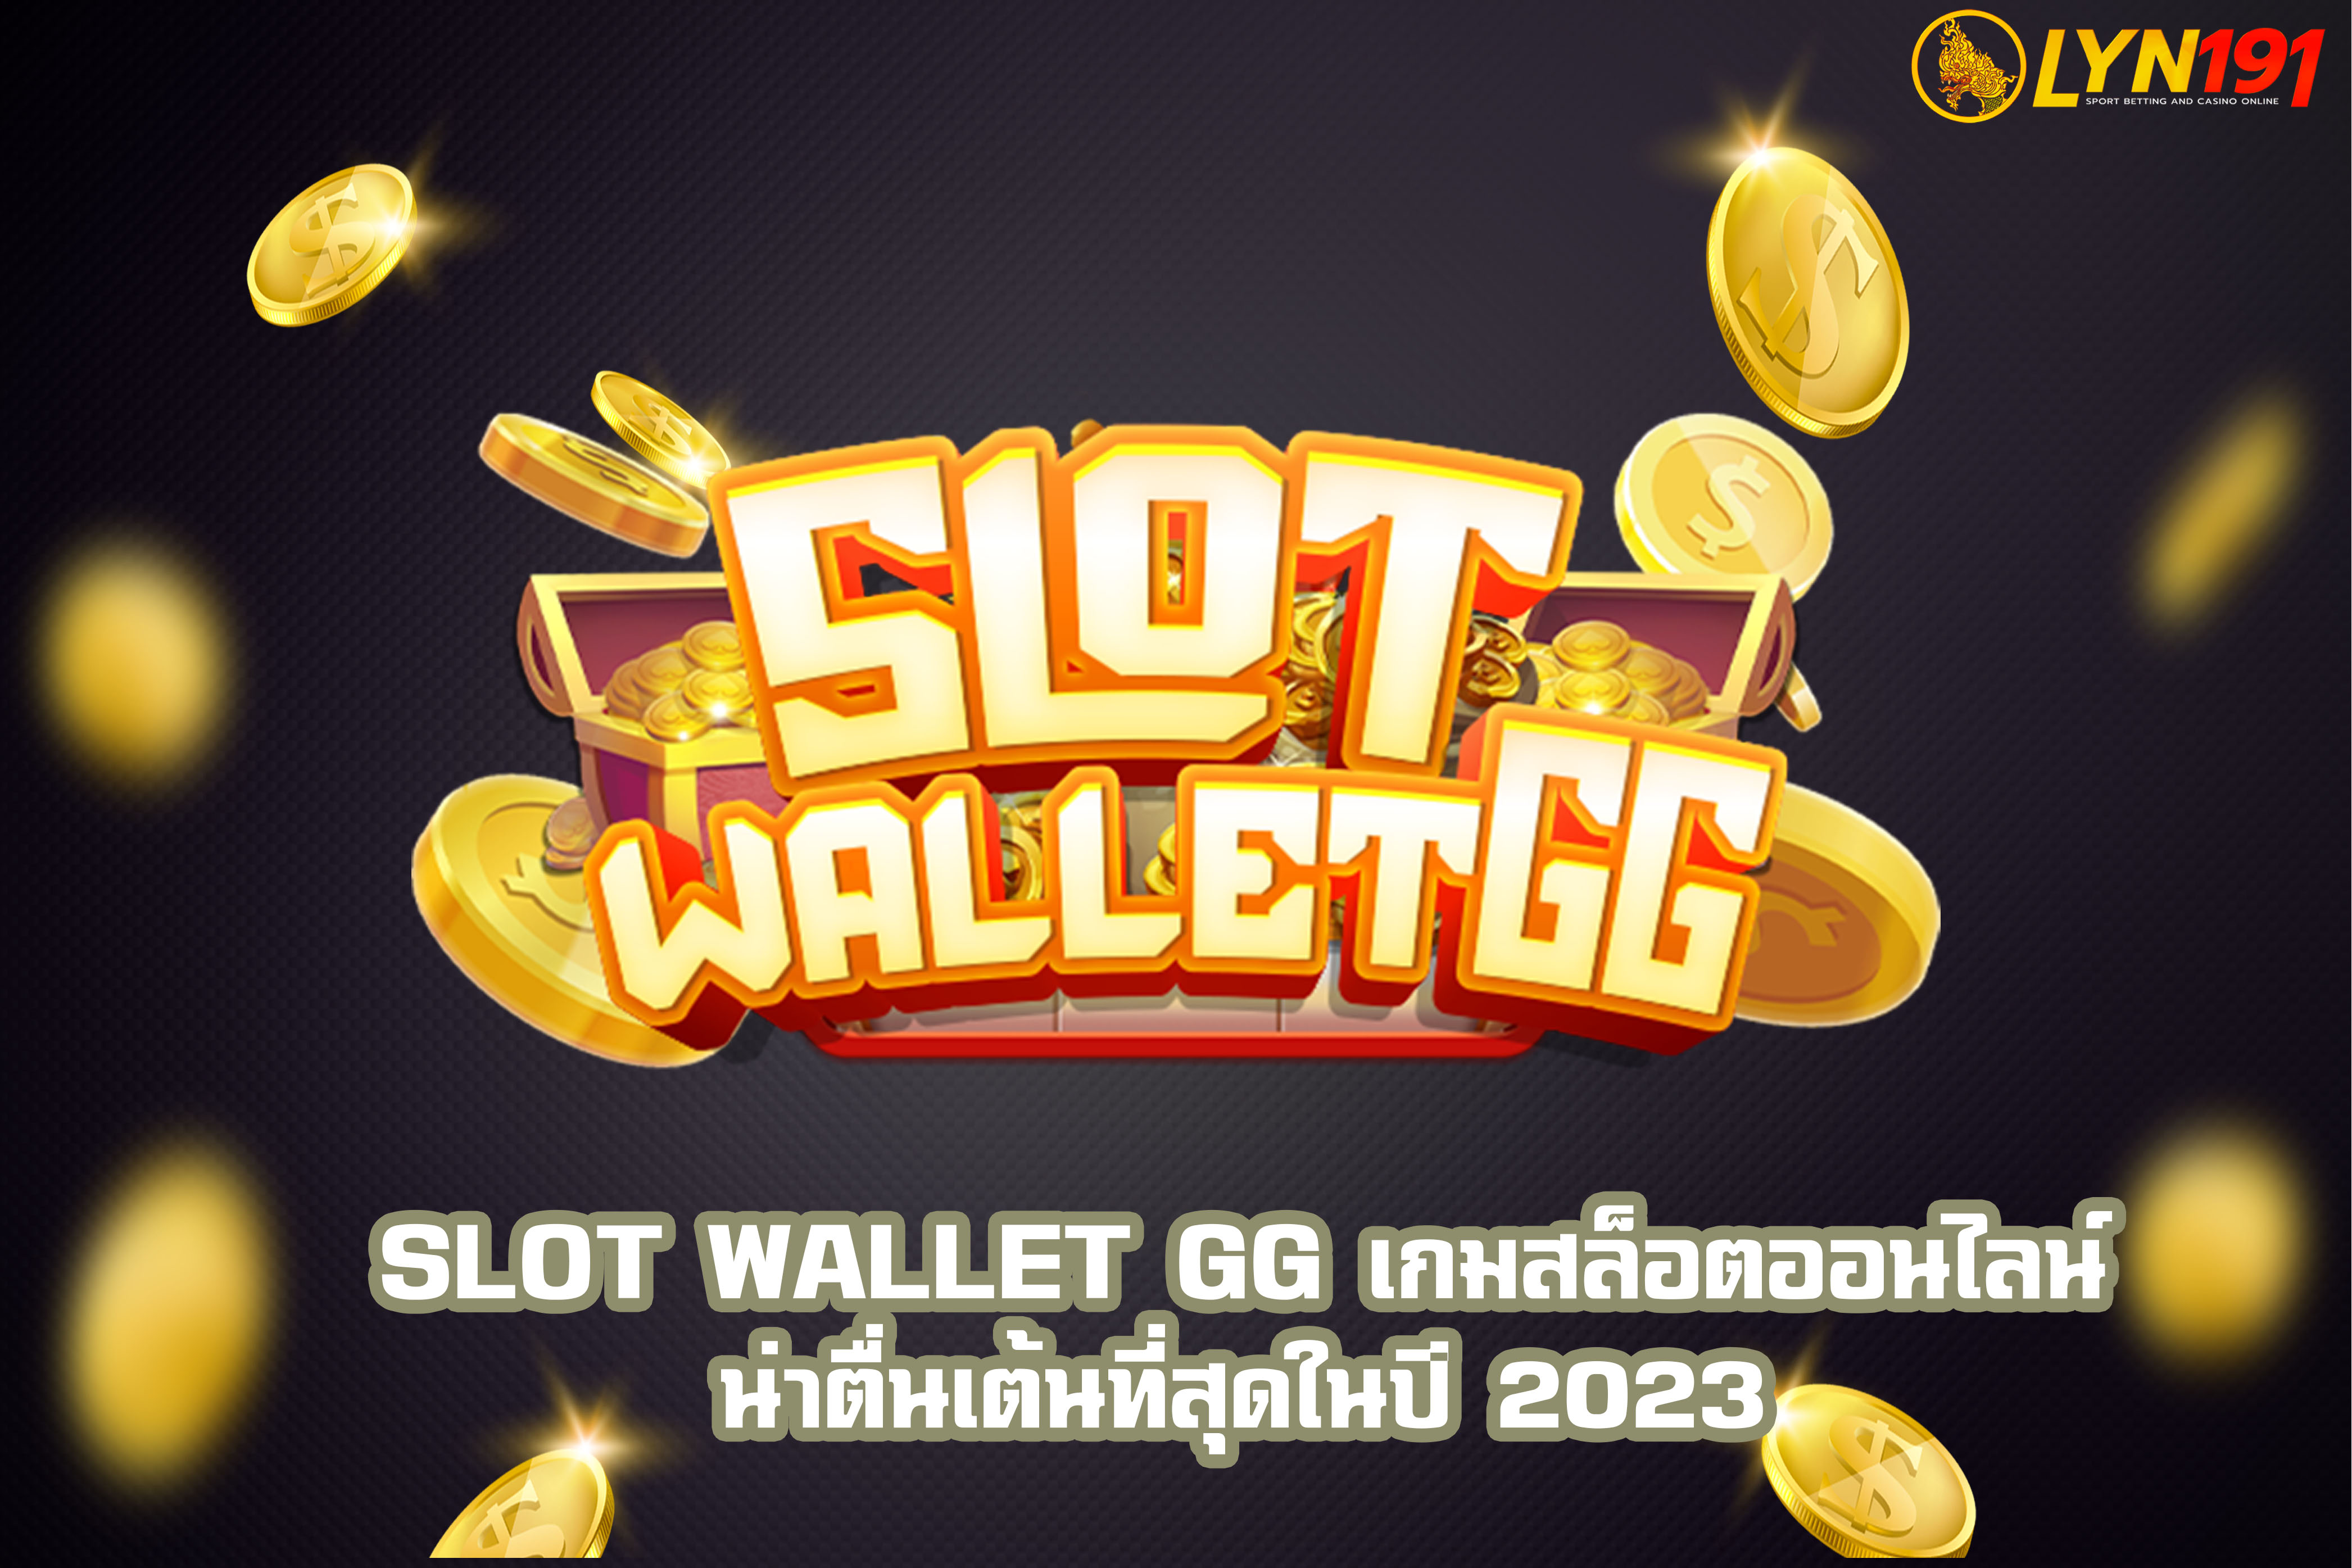 SLOT Wallet GG เกมสล็อตออนไลน์น่าตื่นเต้นที่สุดในปี 2023